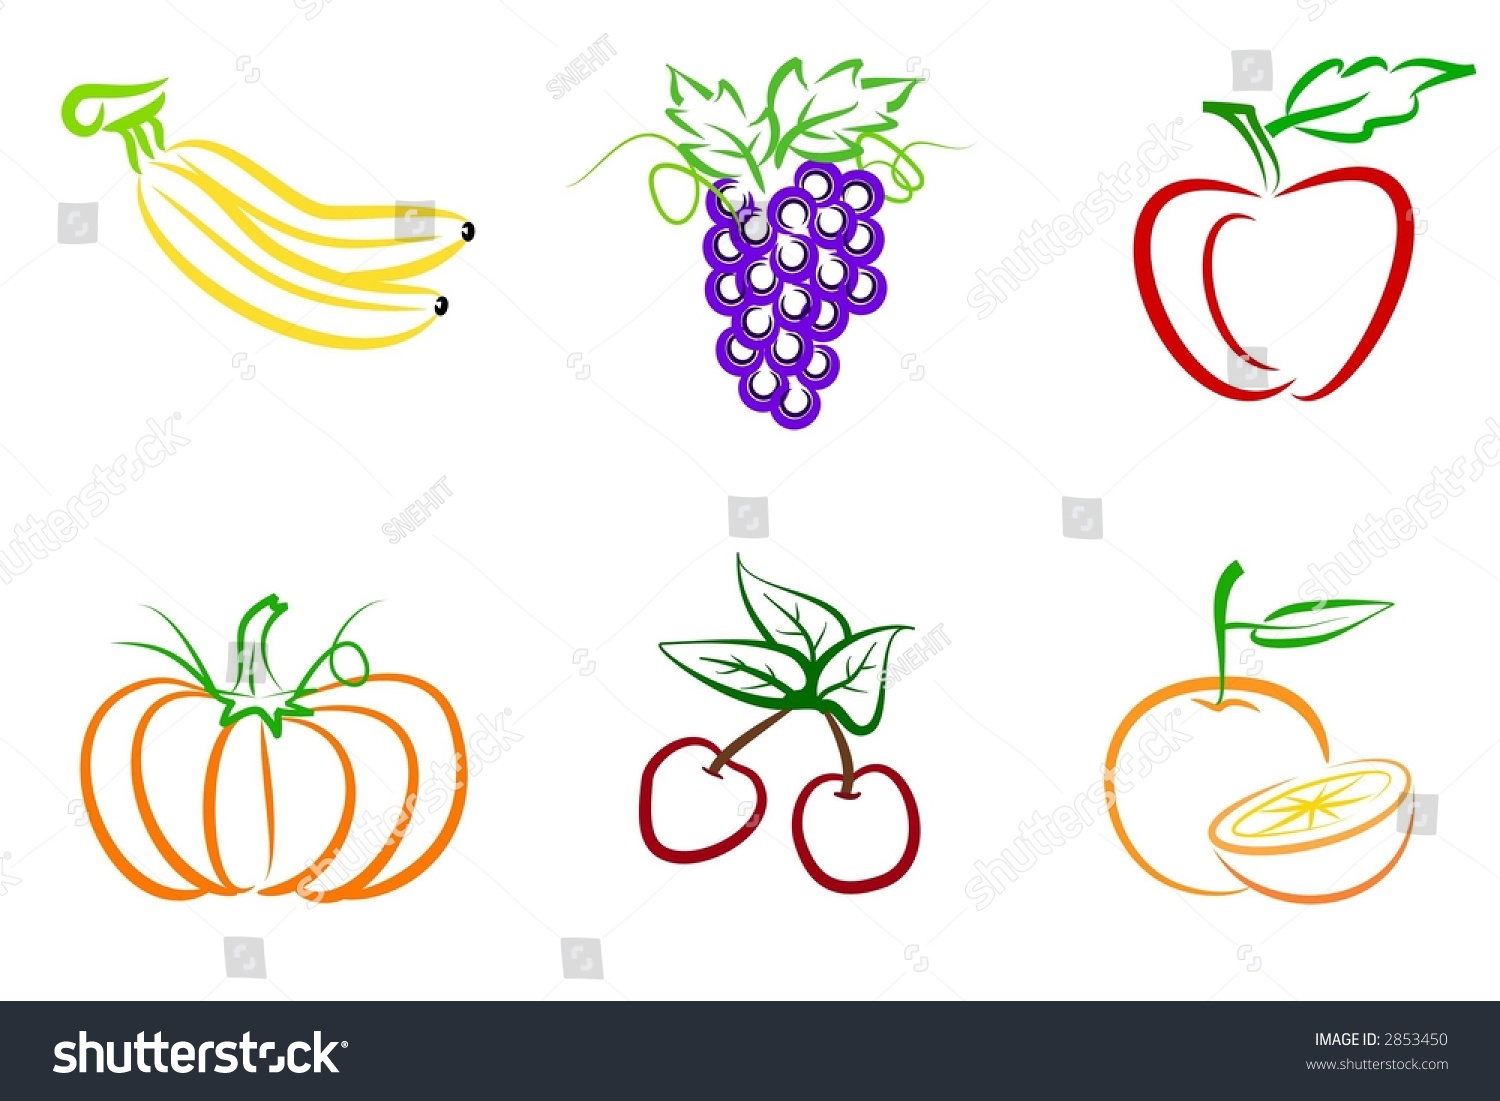 Fruit Illustration - 2853450 : Shutterstock